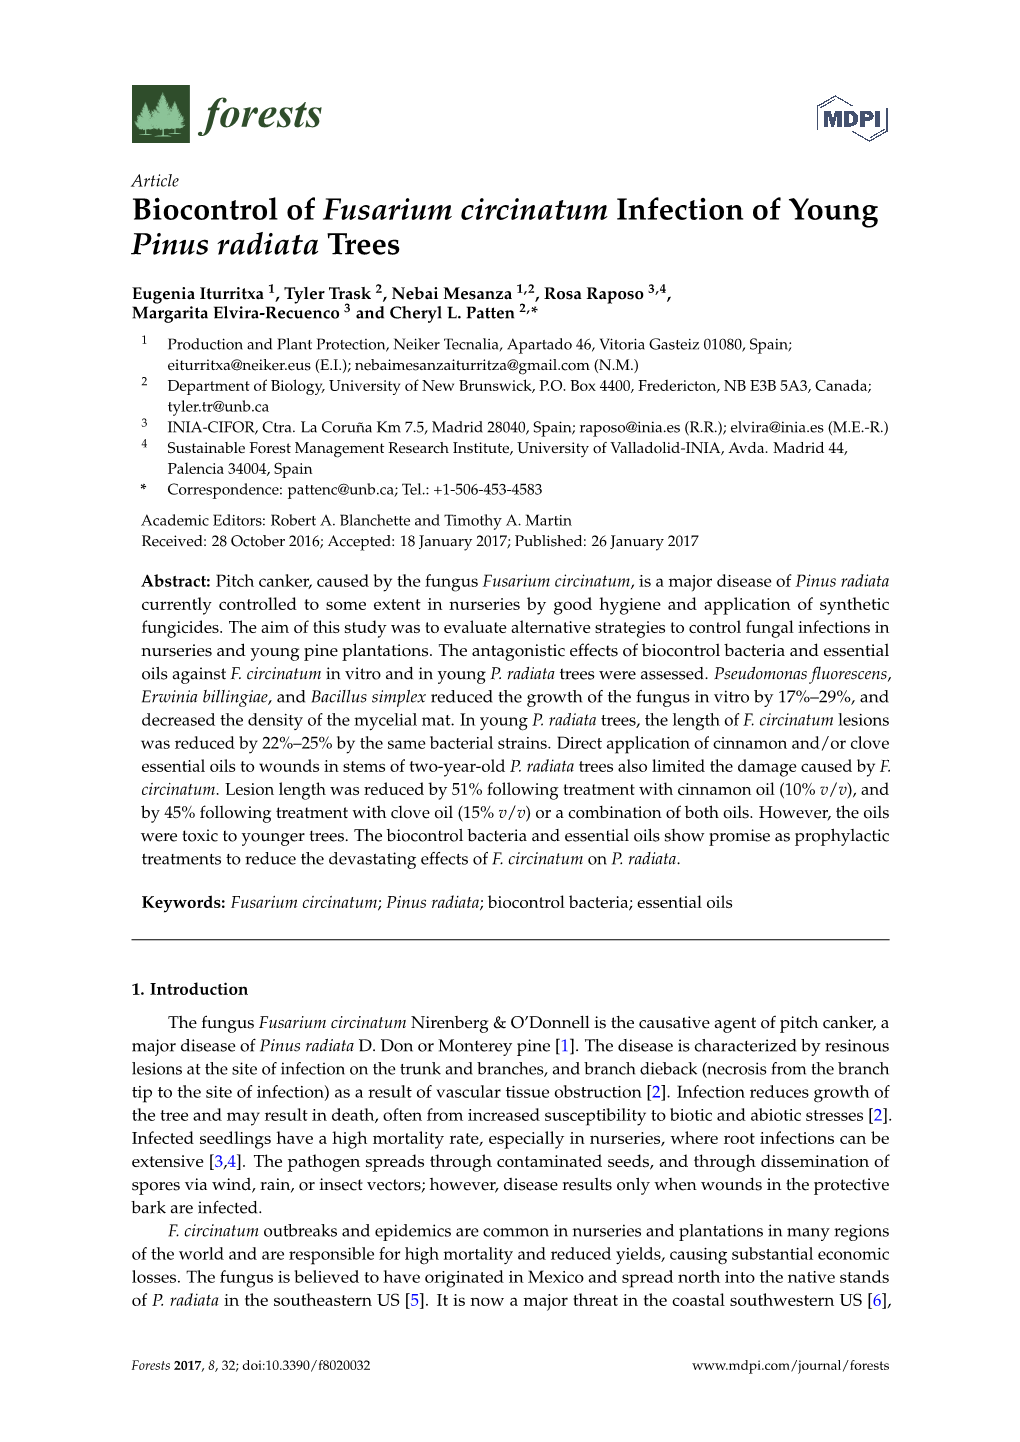 Biocontrol of Fusarium Circinatum Infection of Young Pinus Radiata Trees